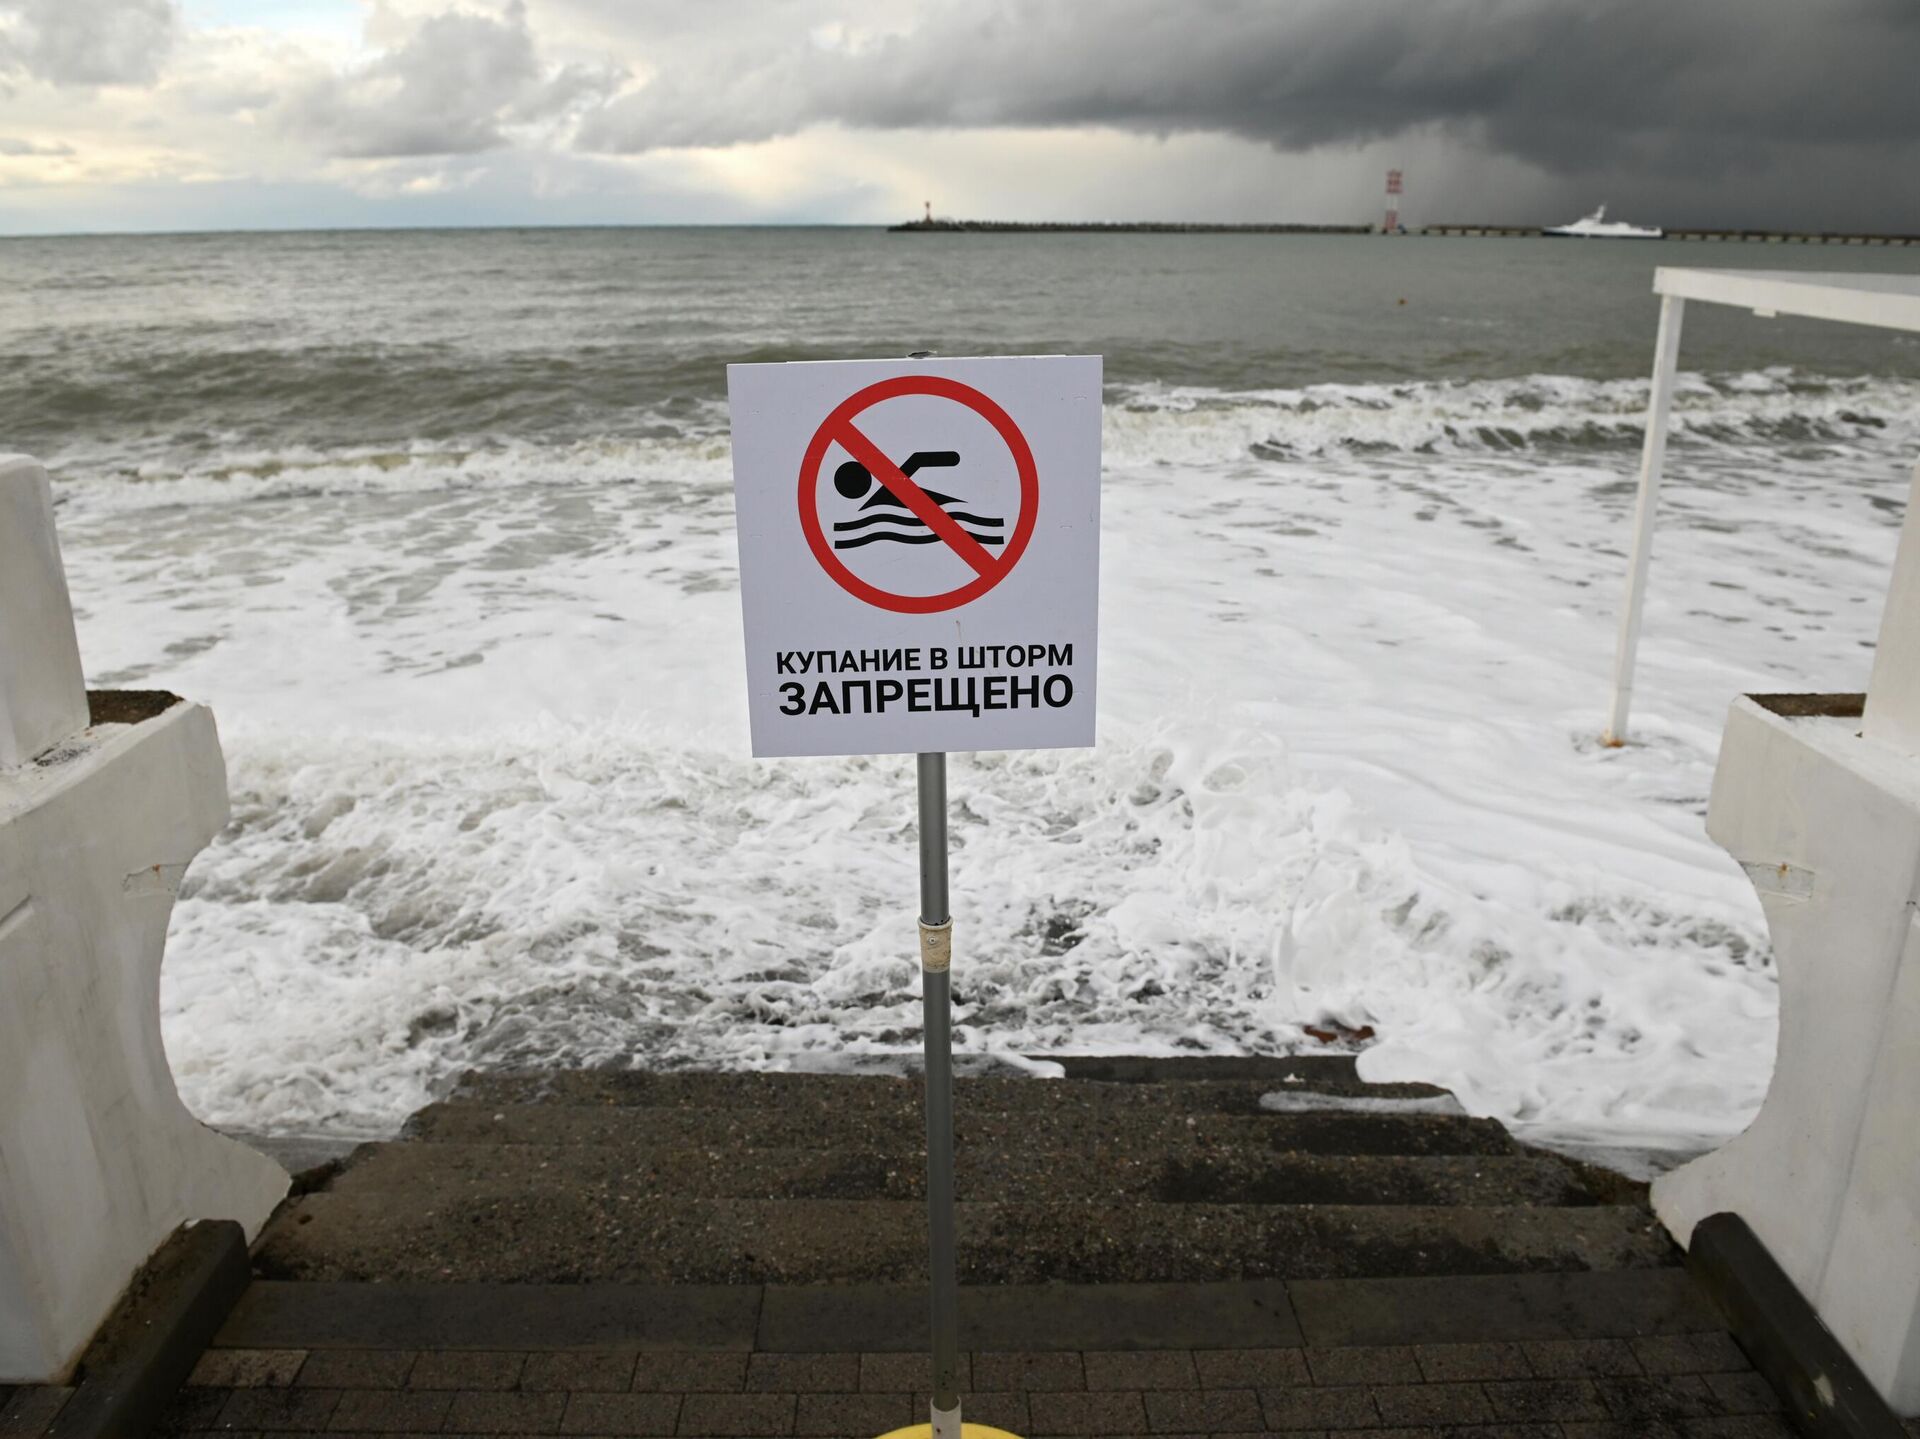 Шторм купание. Шторм купание запрещено. Купаться в шторм запрещено знак. Шторм в Сочи. Купание в шторм.